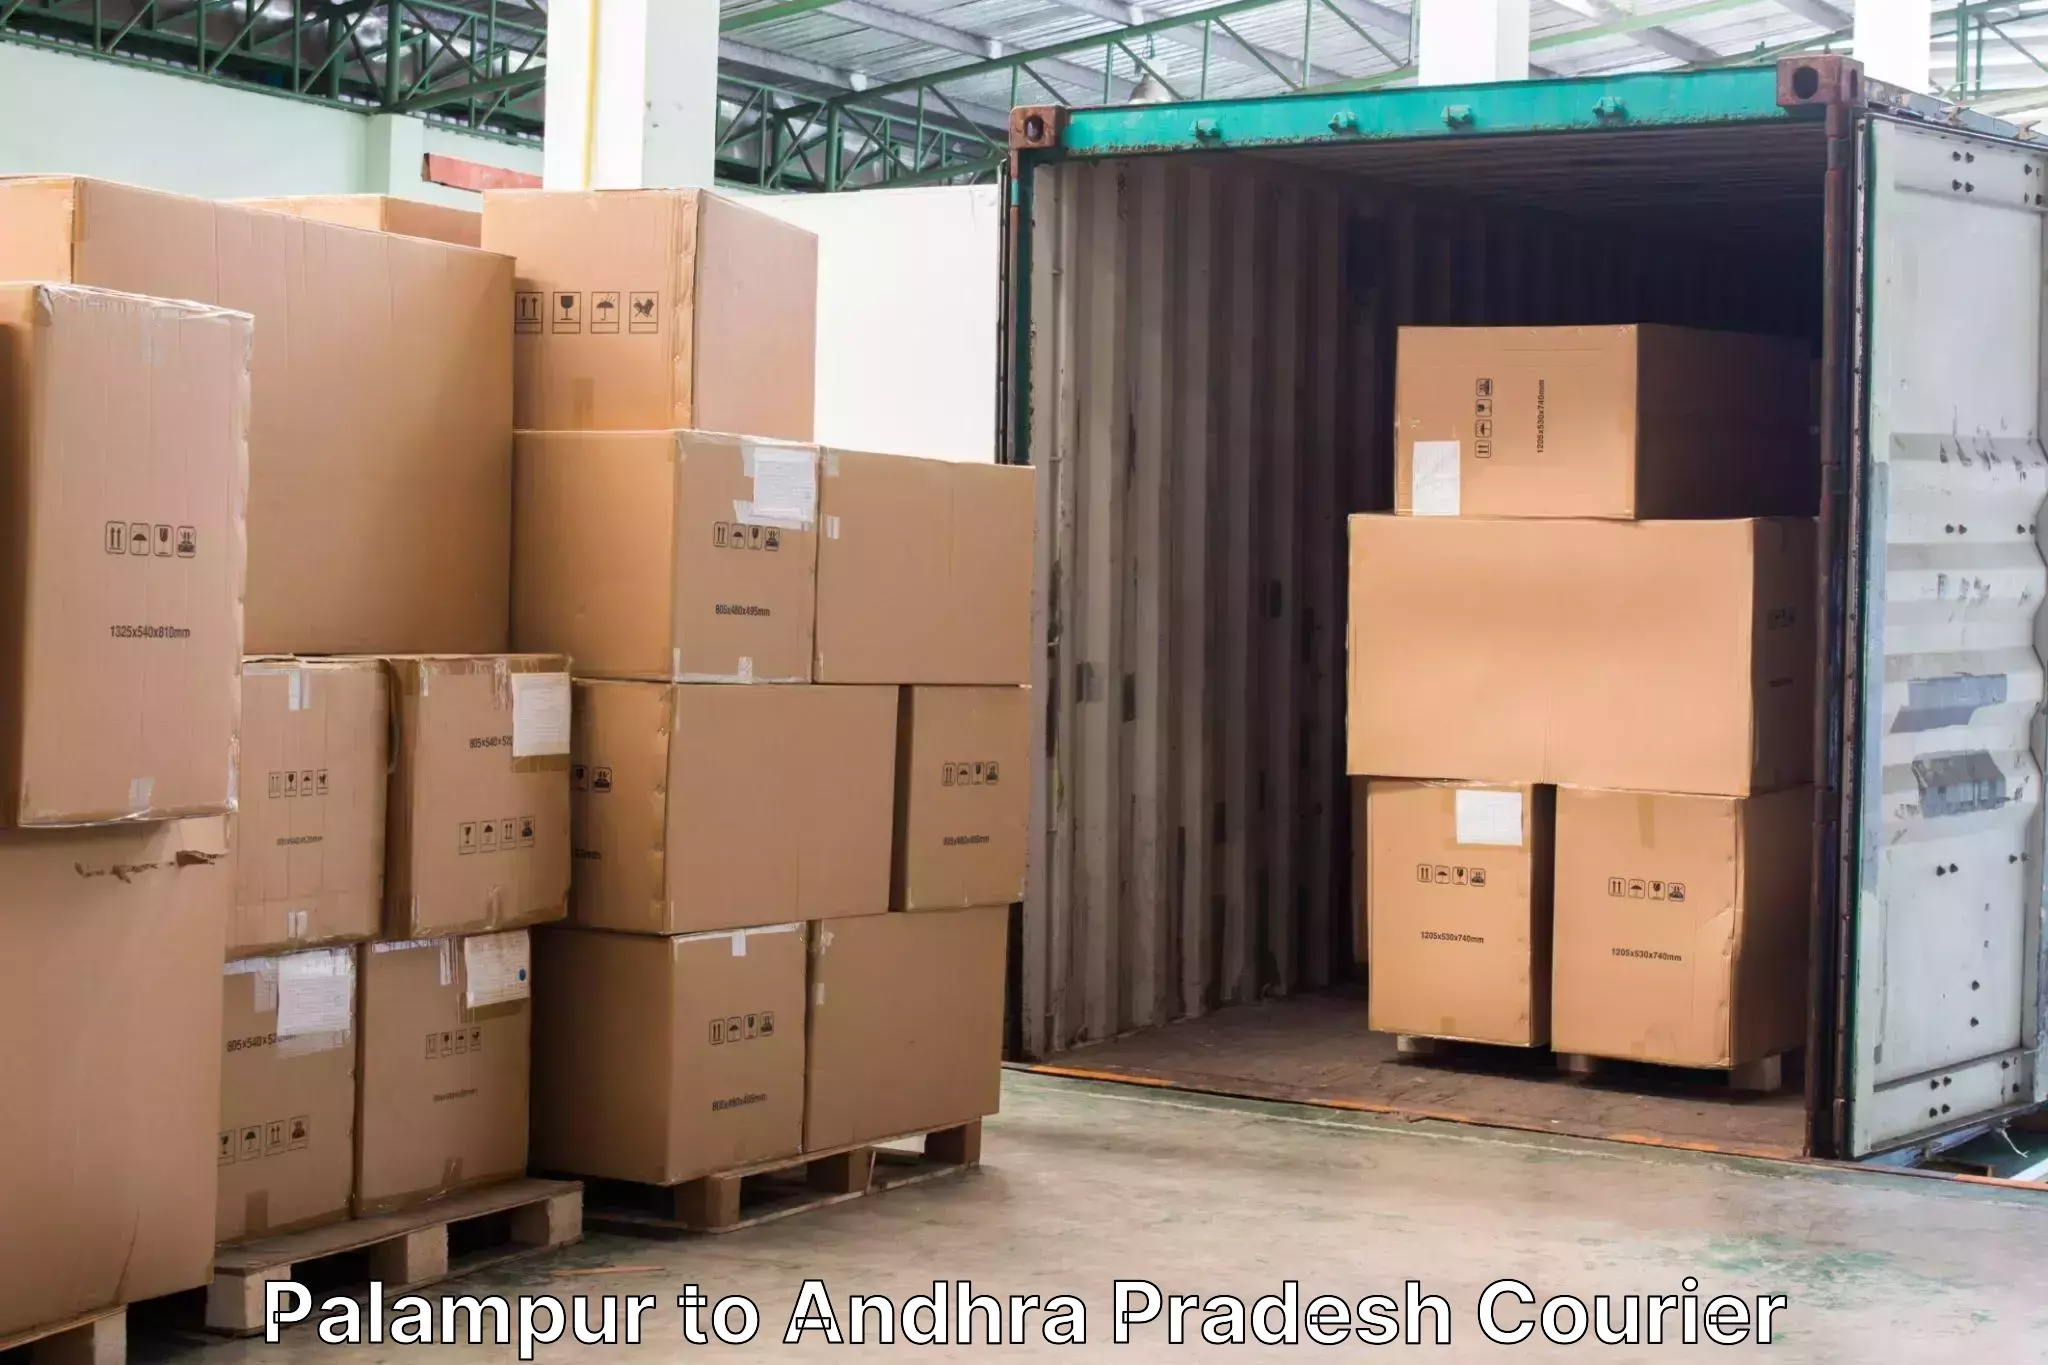 Online luggage shipping Palampur to Pileru